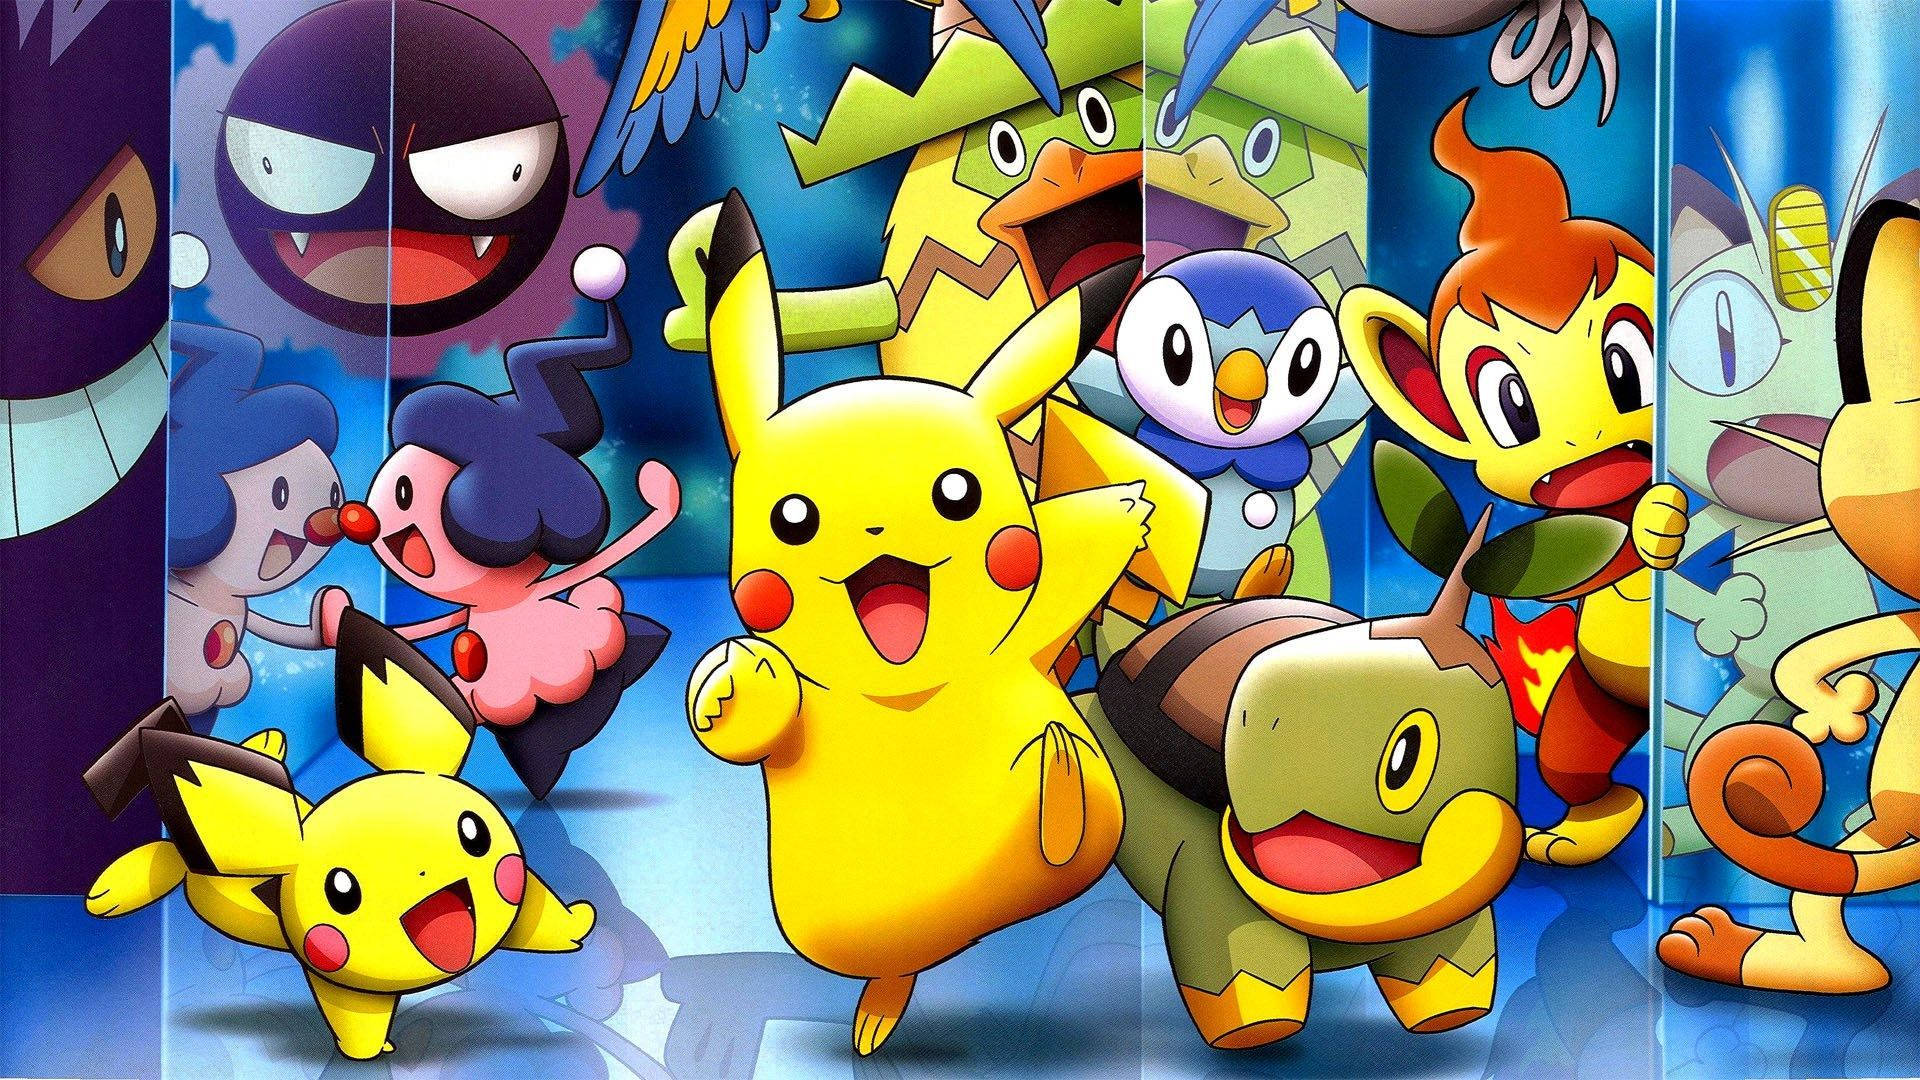 Pikachu and Friends Unite Wallpaper